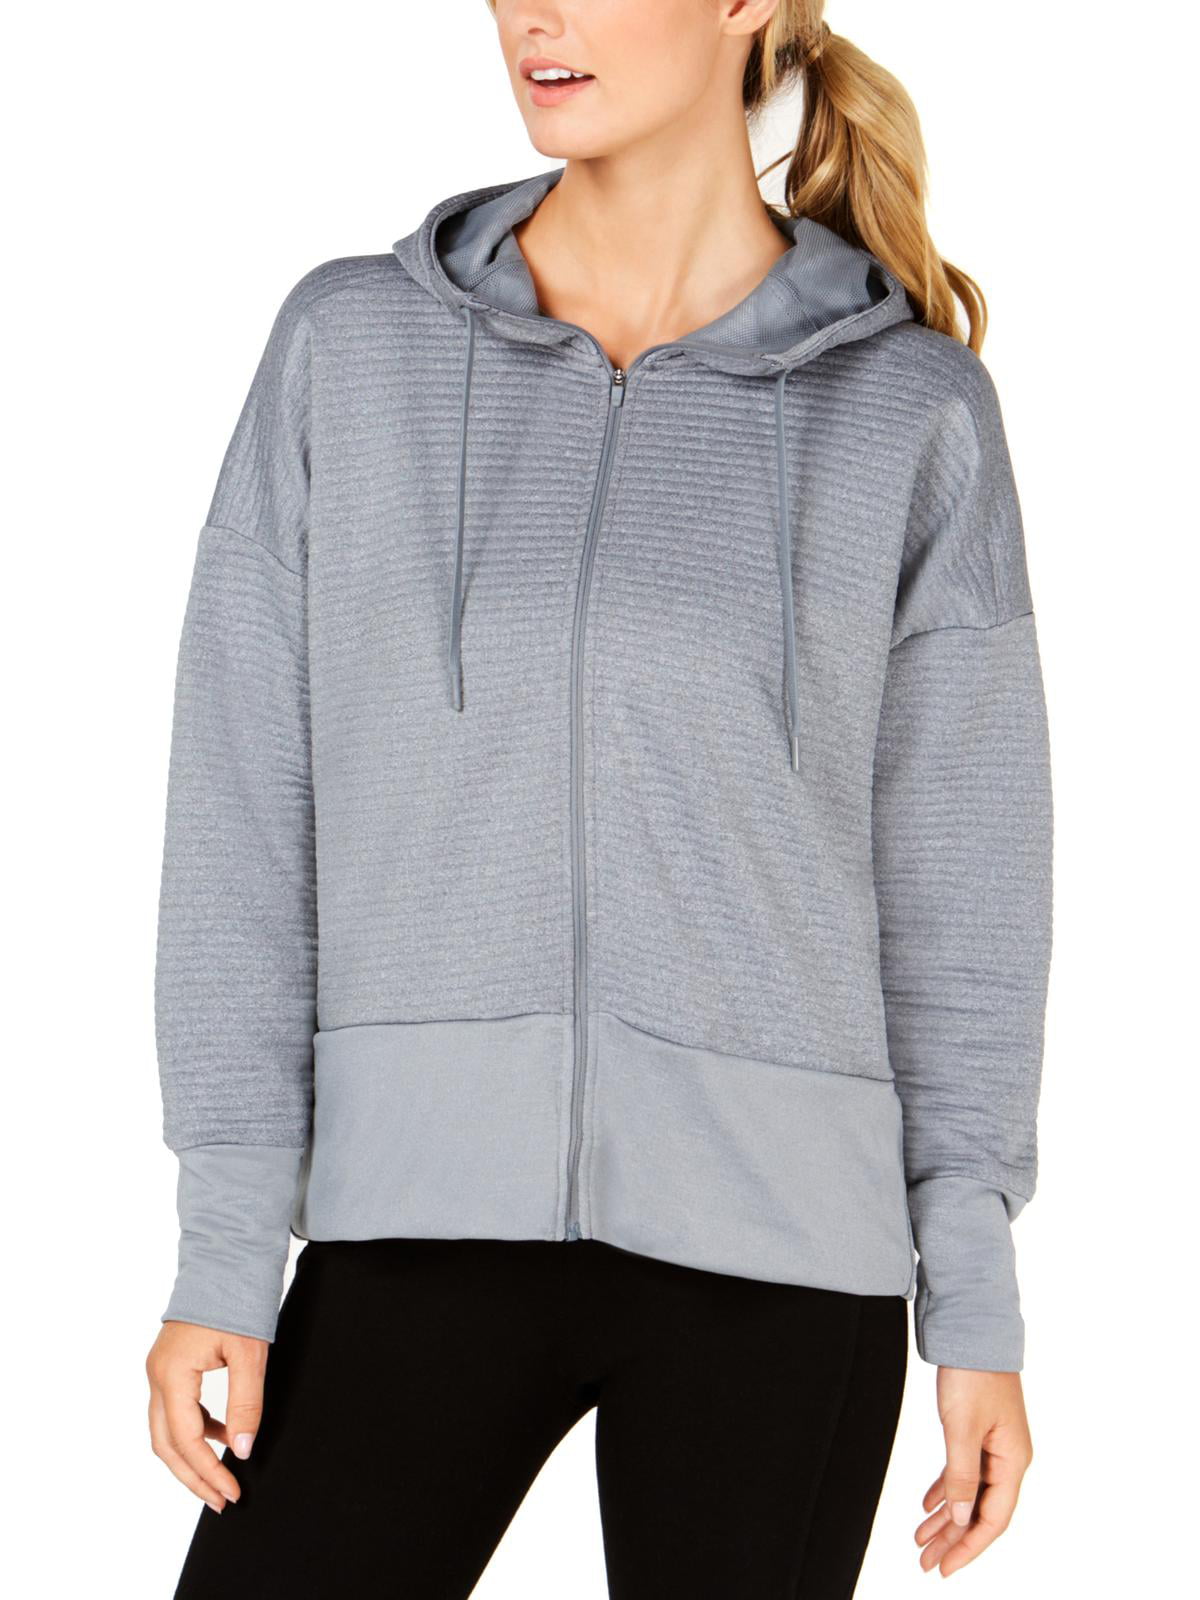 Nike - Nike Womens Sweatshirt Training Hoodie Gray XL - Walmart.com ...